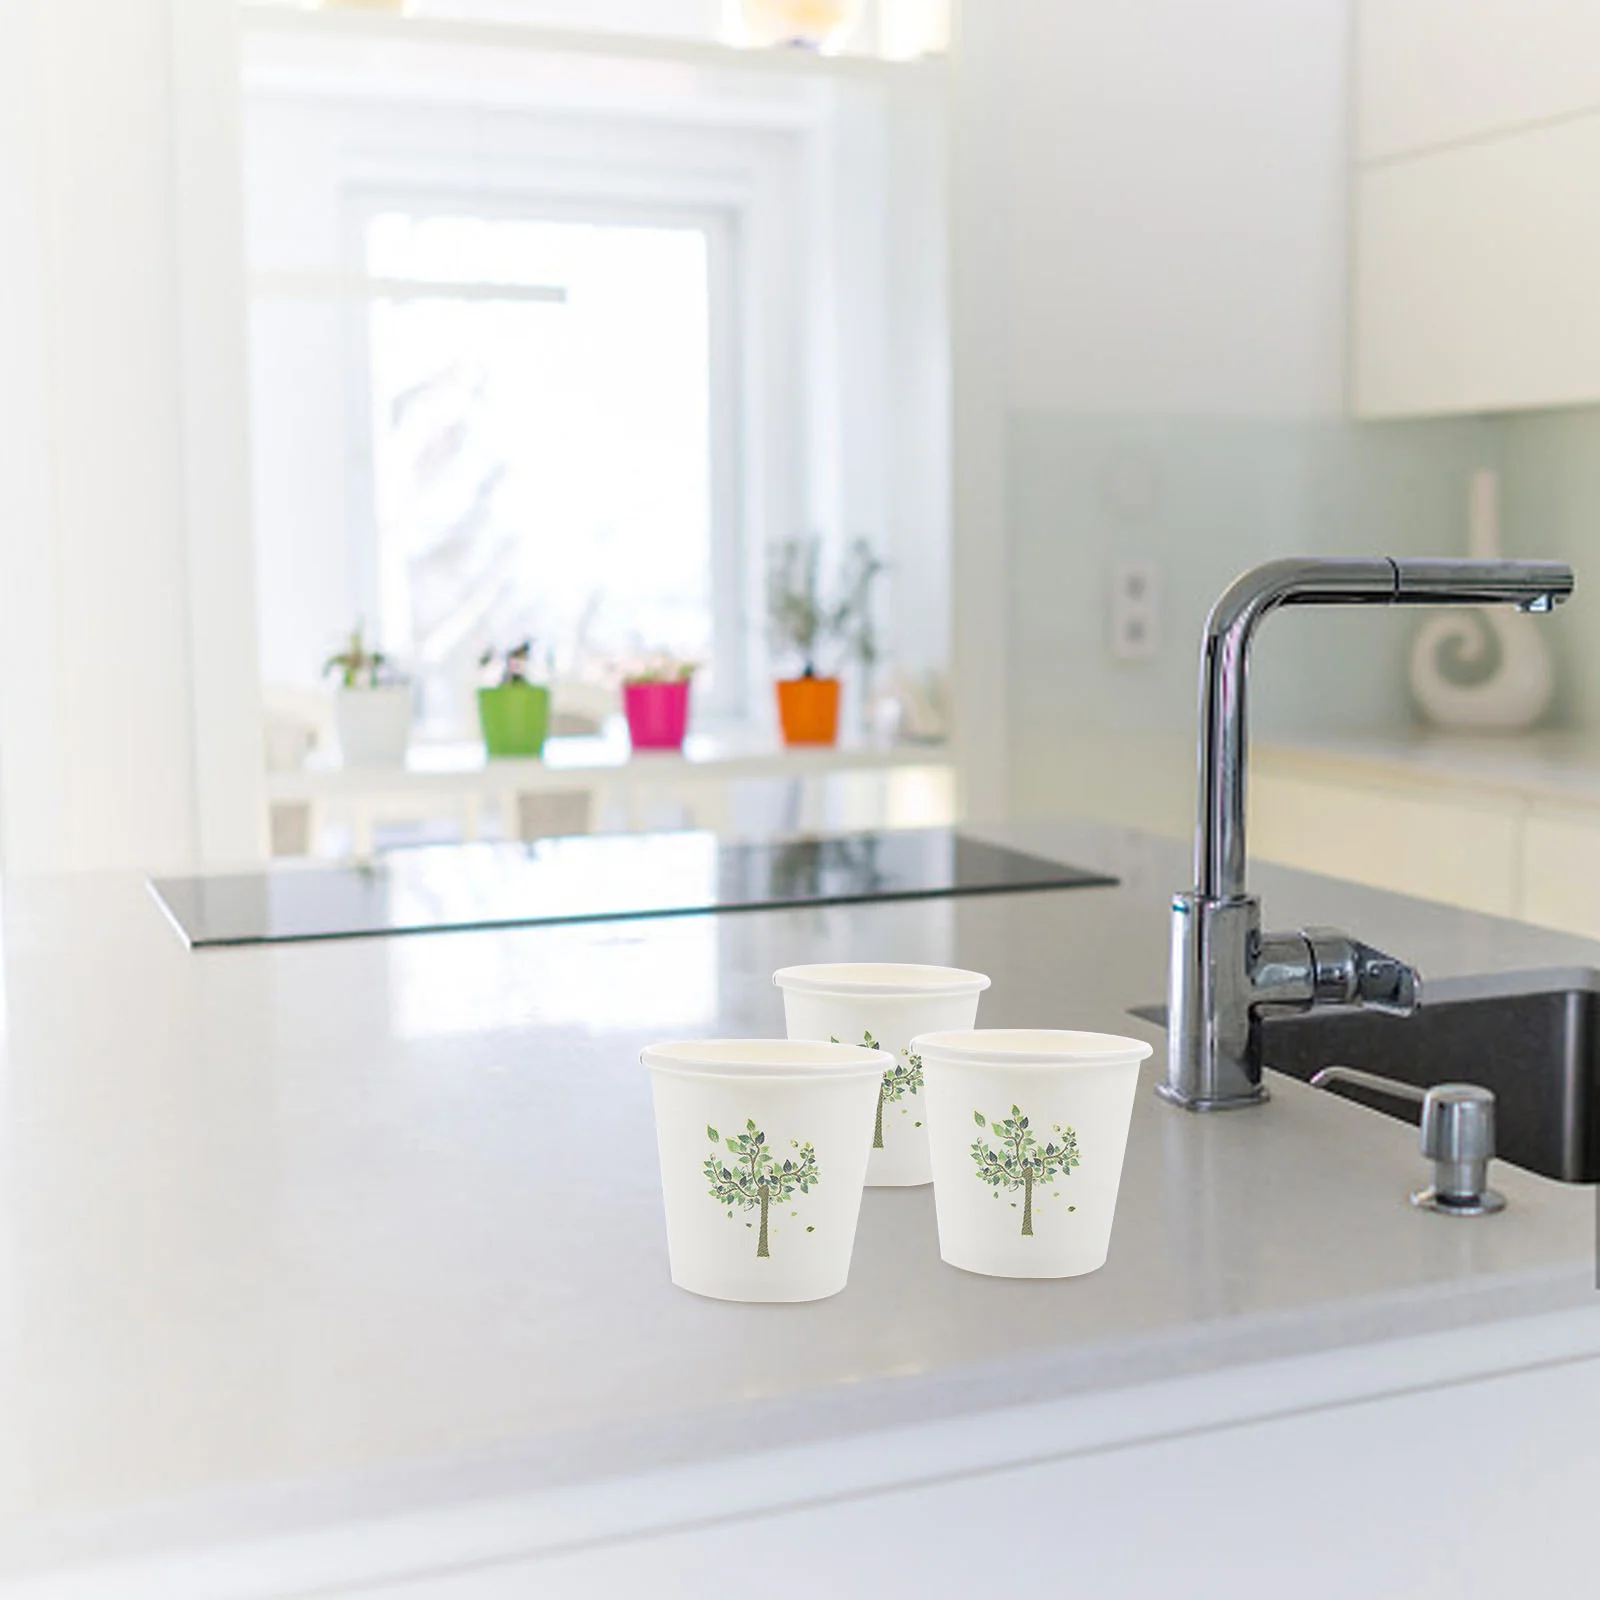 

500 Pcs Tasting Cup 3 Oz Bathroom Cups 3oz Paper Bulk Coffee Mugs Washing Small